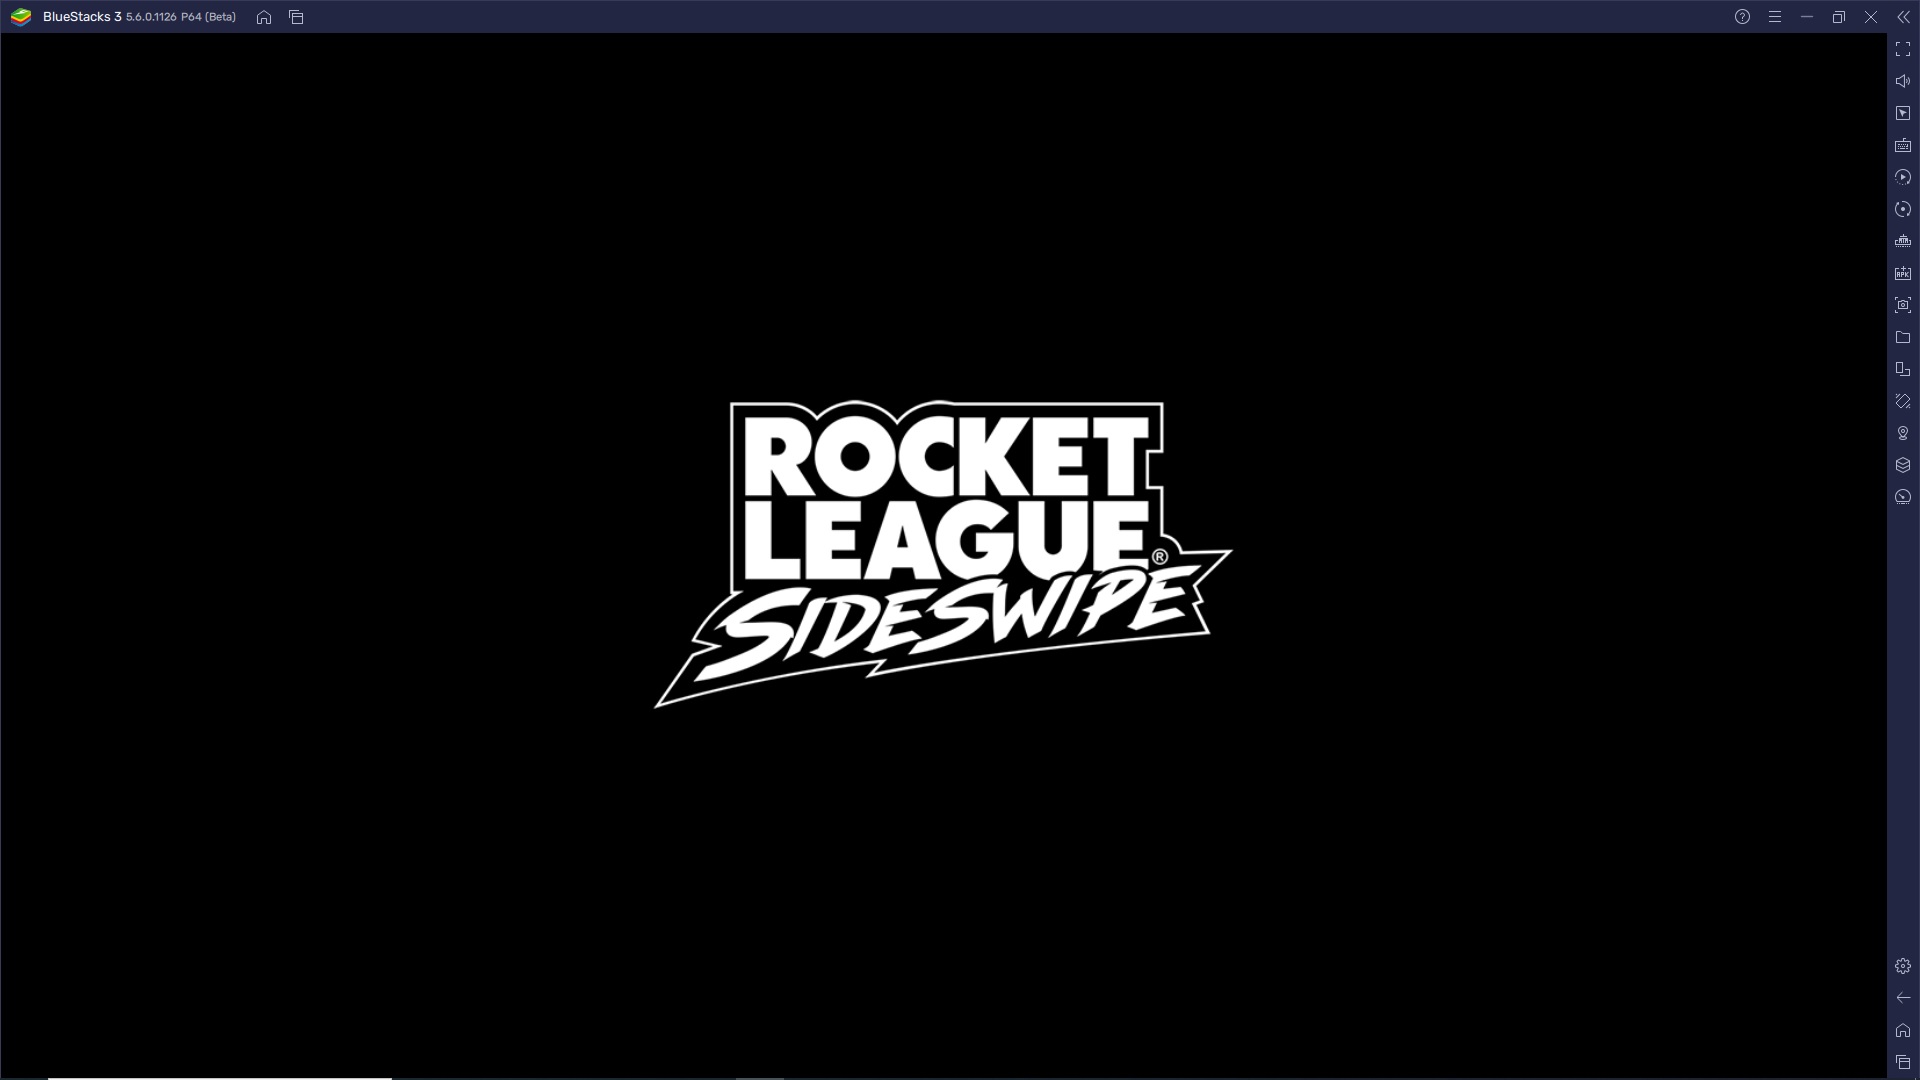 Rocket League Sideswipe su BlueStacks - Come ottimizzare l’esperienza di gioco